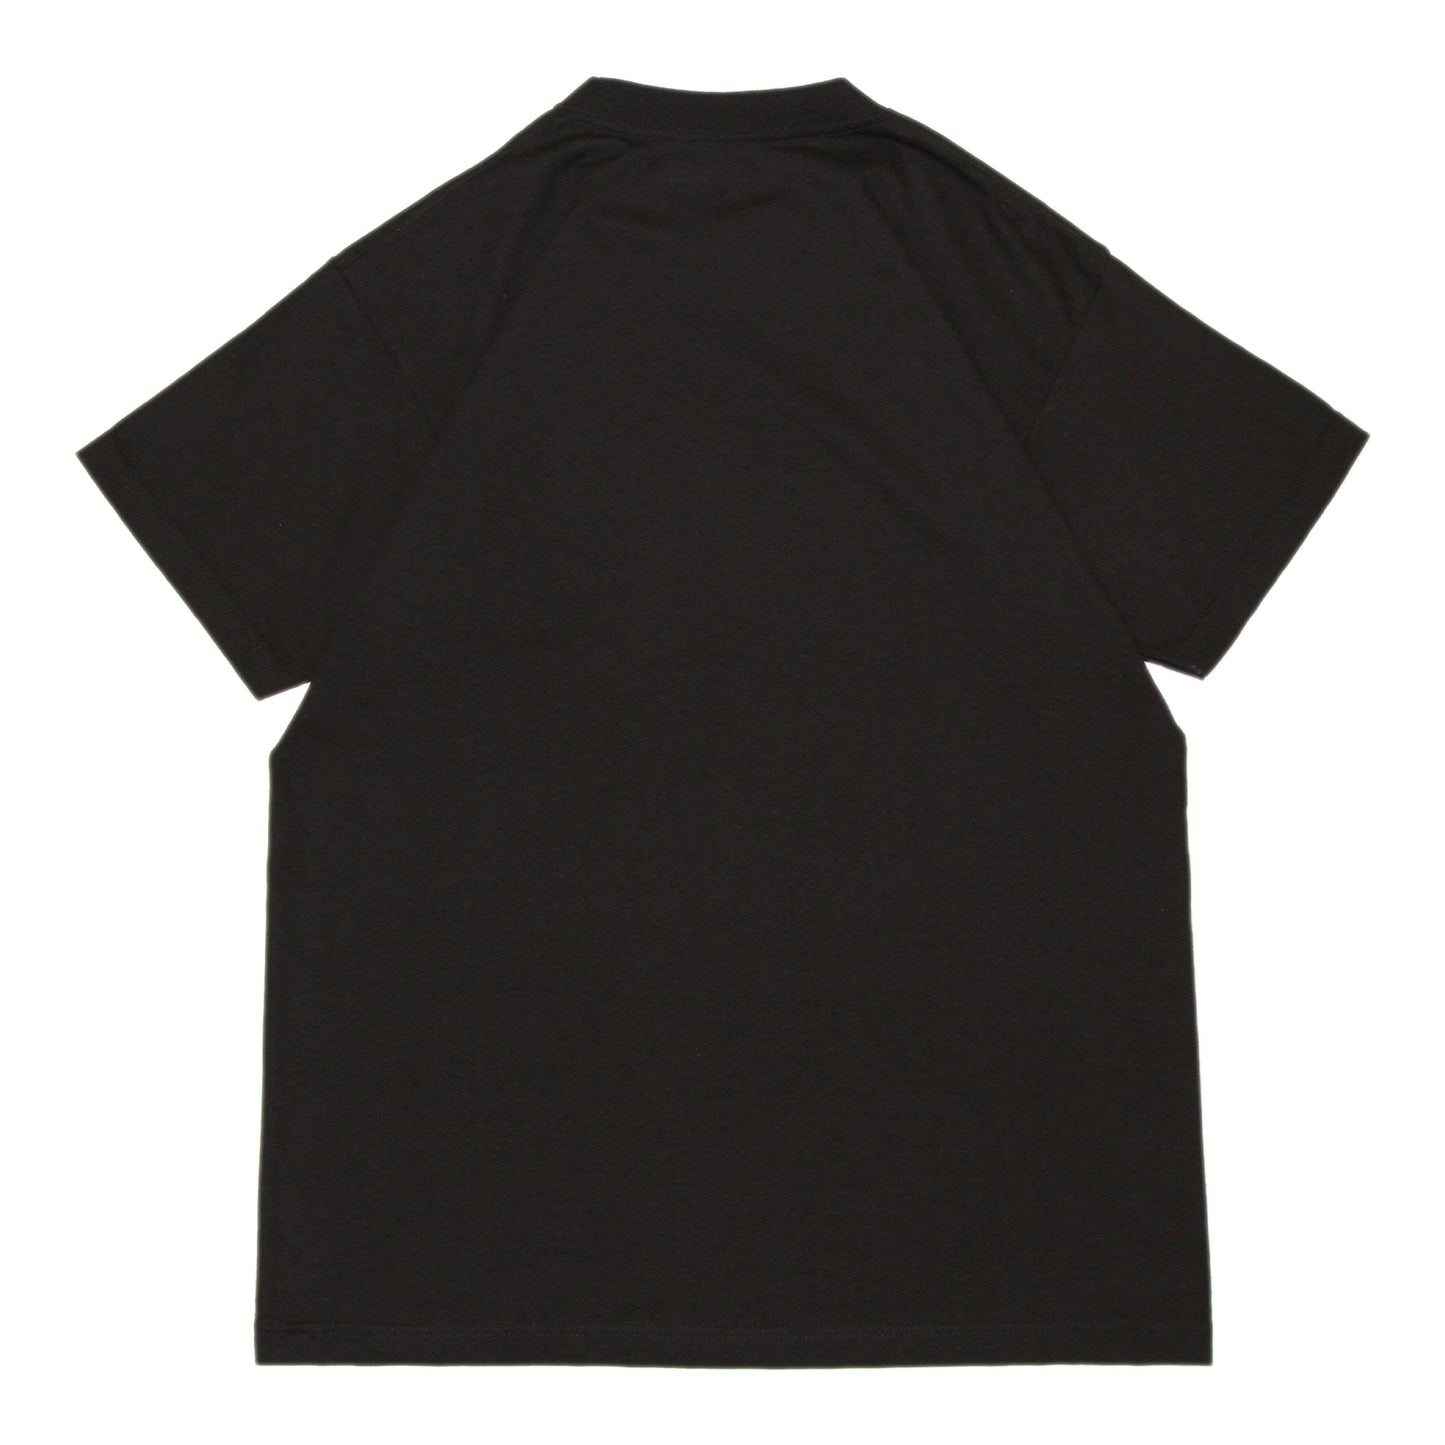 ALYK - Blackbook All Over Print T-Shirt/Black